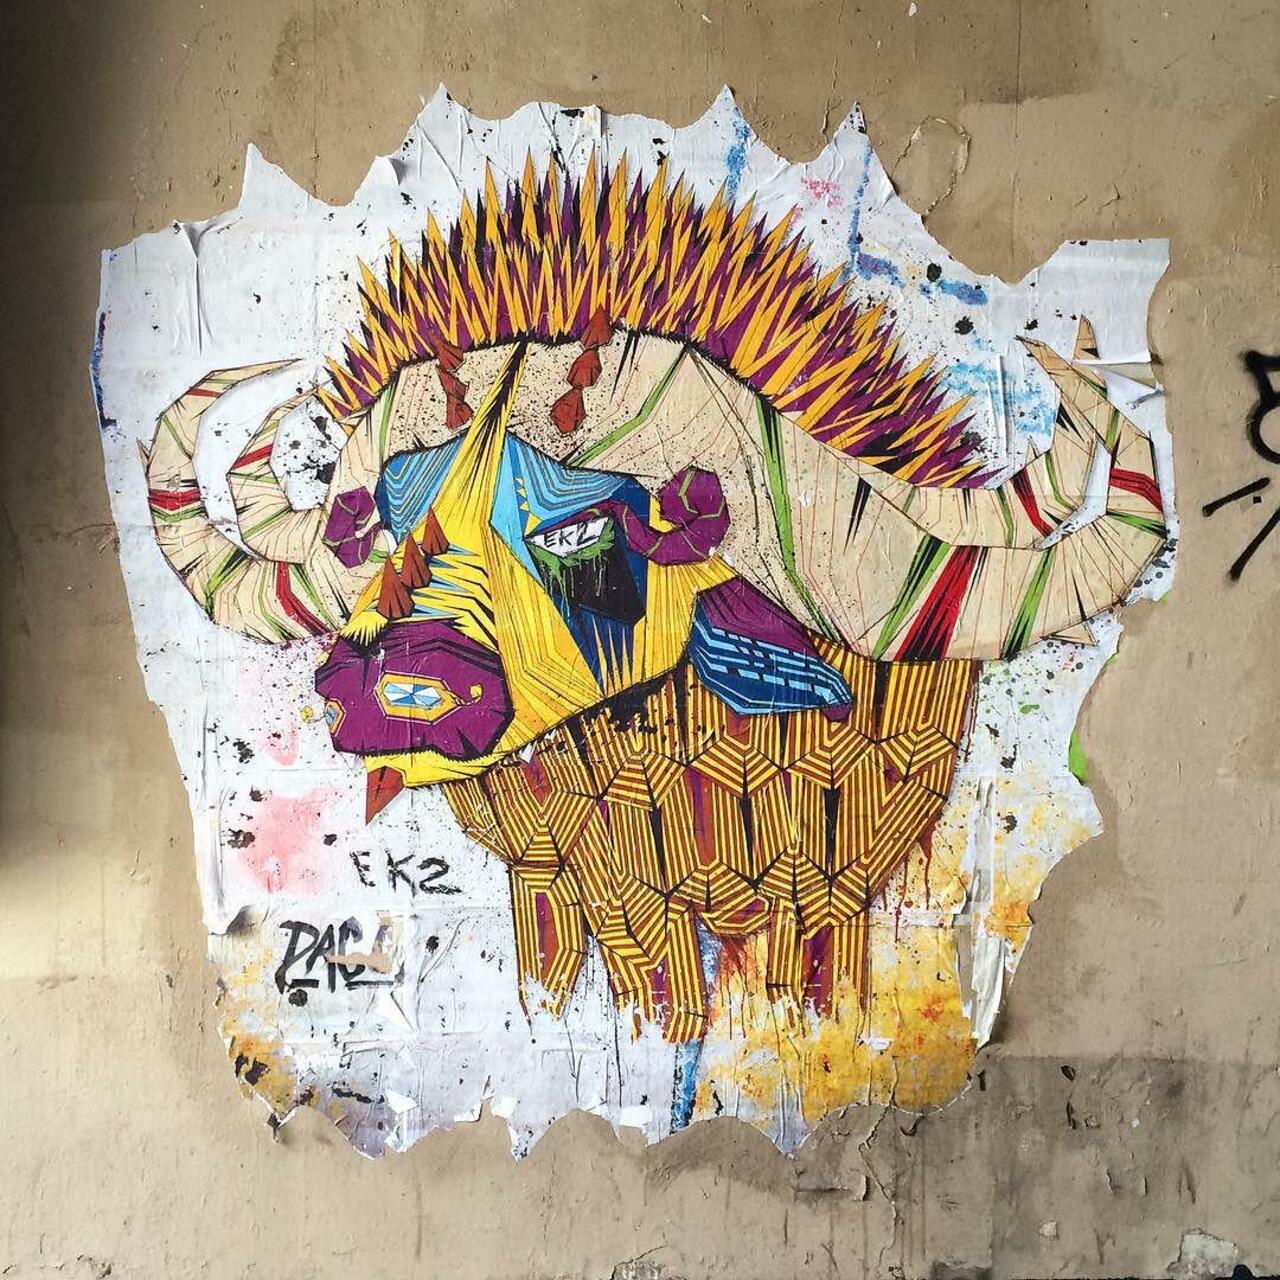 #Paris #graffiti photo by @benapix http://ift.tt/1KSjxGz #StreetArt http://t.co/8SEj9hlbE0